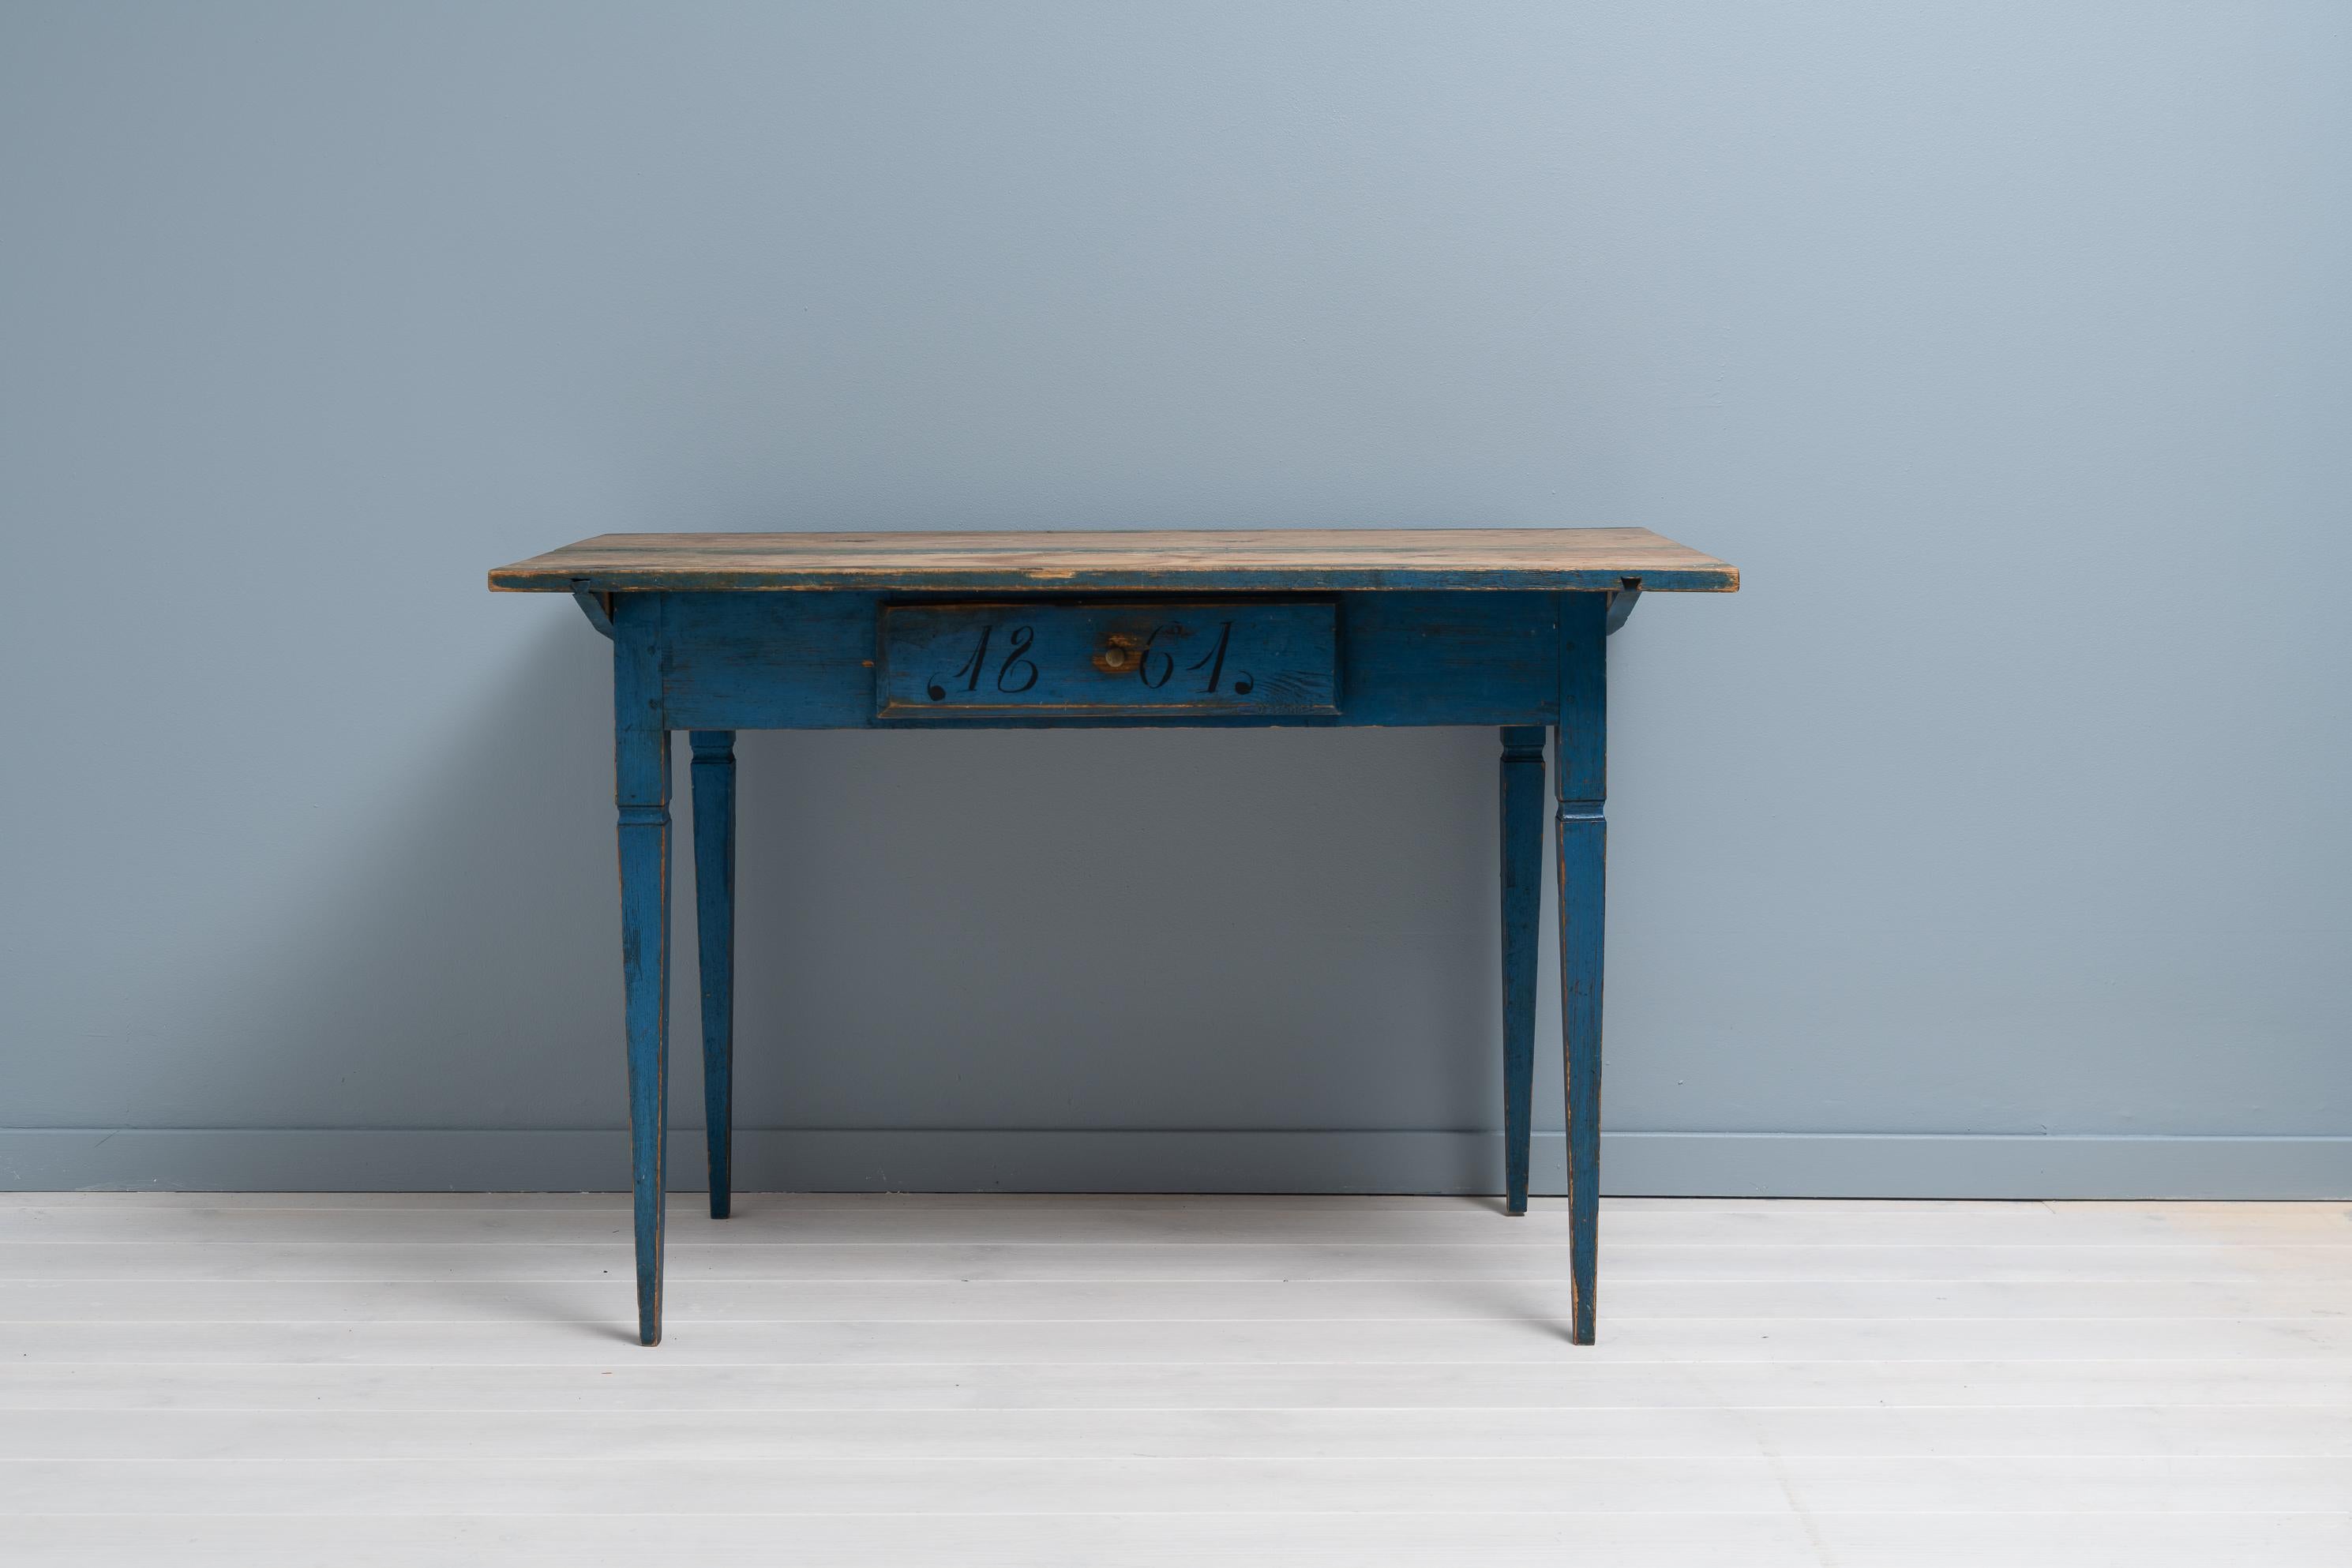 Blauer Schreibtisch im Landhausstil aus Kiefer aus Hälsingland in Nordschweden. Der Tisch ist ein echtes schwedisches Landhausmöbel und hat die authentische Patina der Zeit. Mit einer einzigen Schublade im Rand und geraden, spitz zulaufenden Beinen,